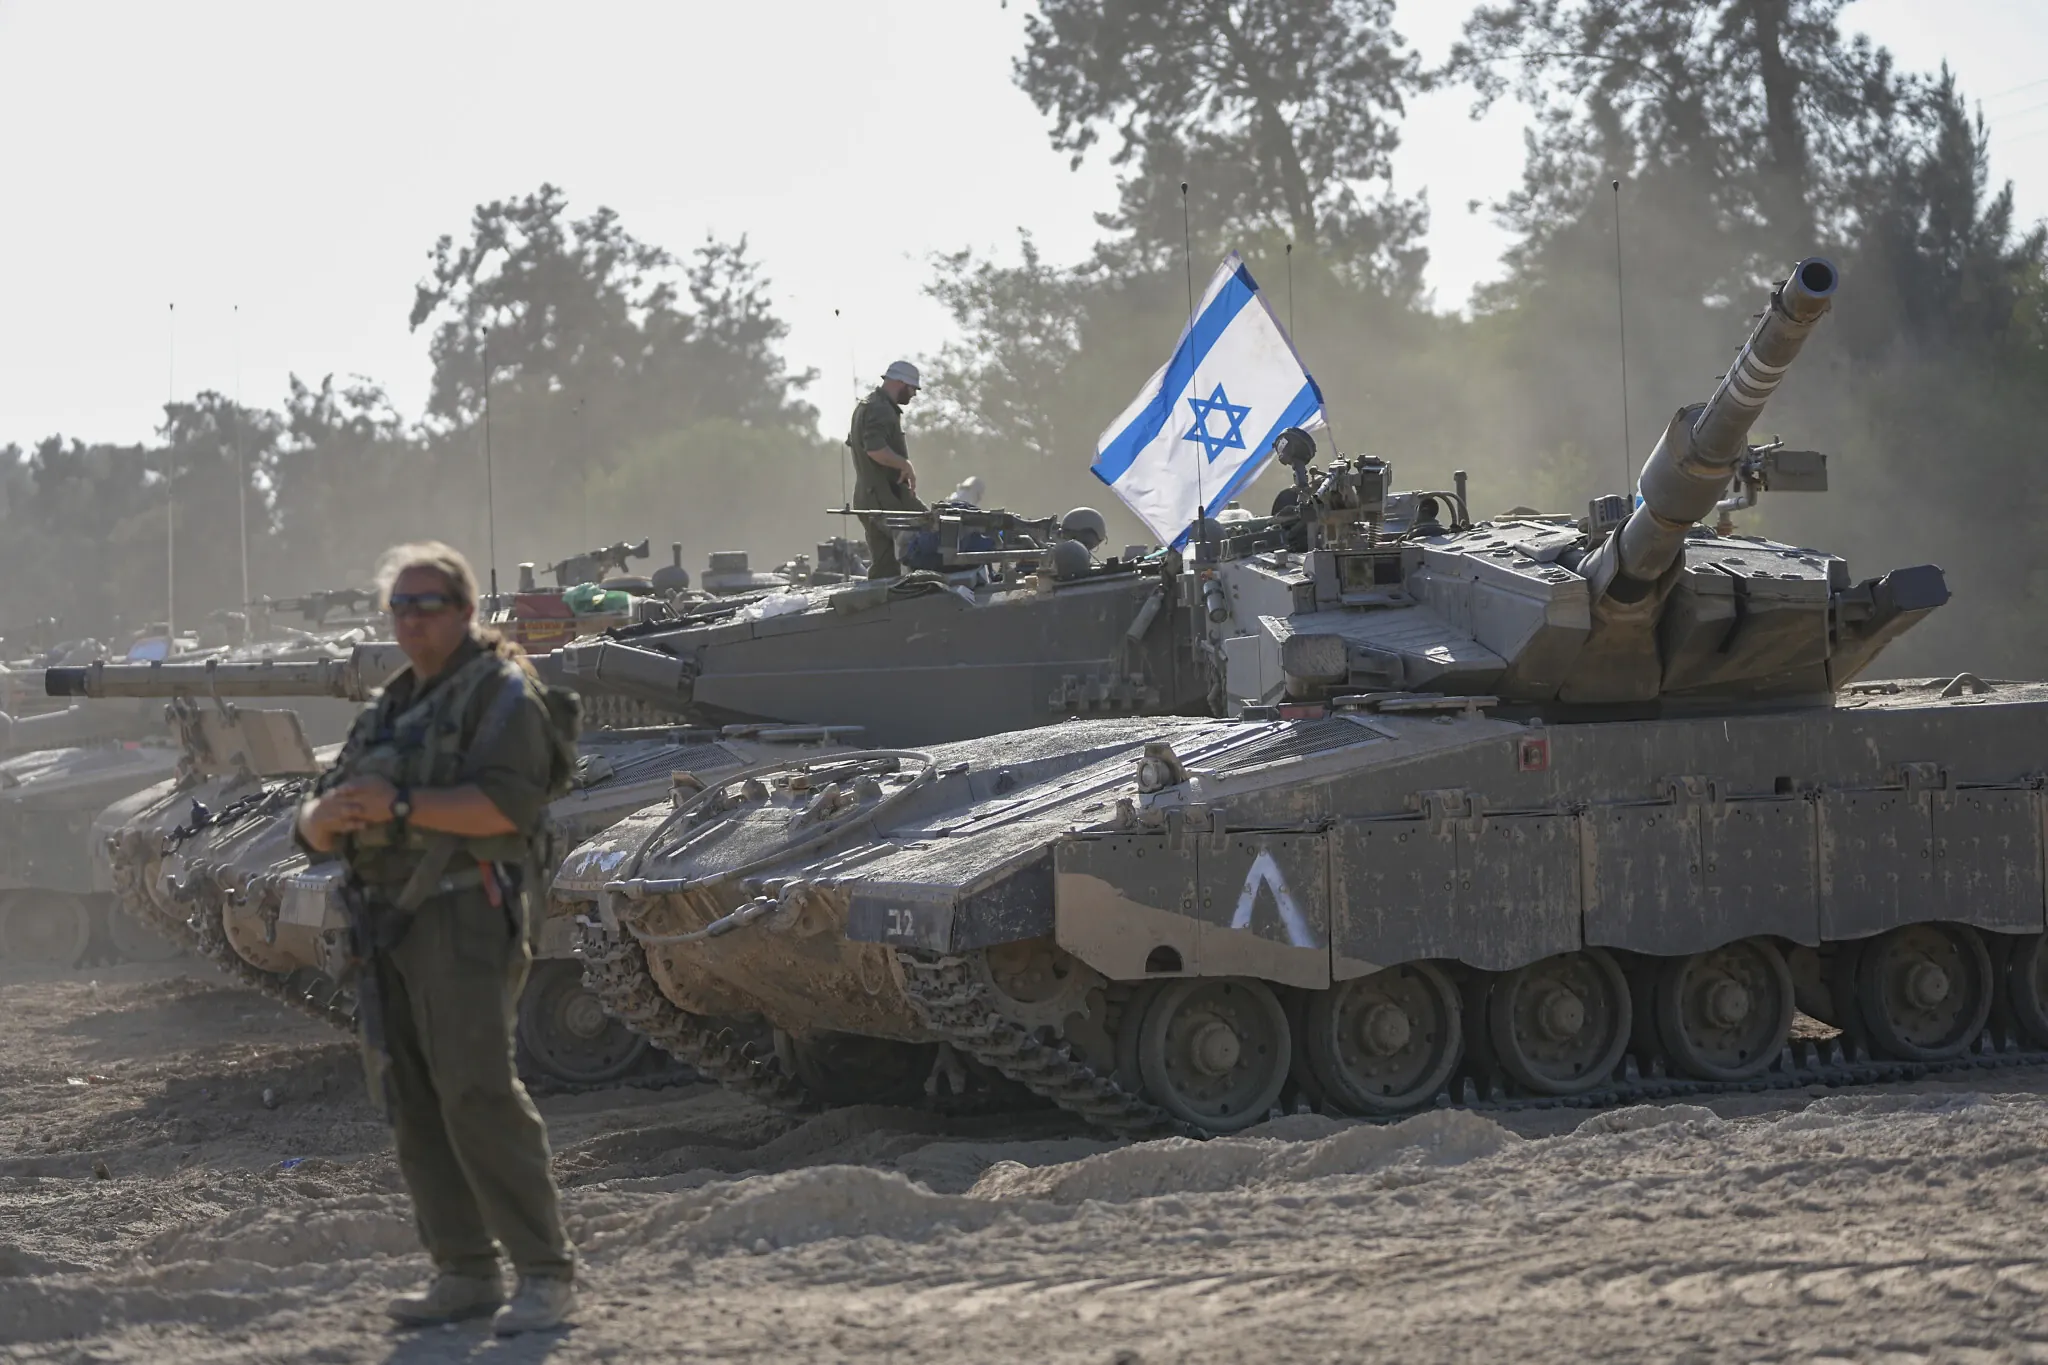 BREAKING! A început invazia terestră în Fâșia Gaza. Armata a primit ordinul după 20 de zile